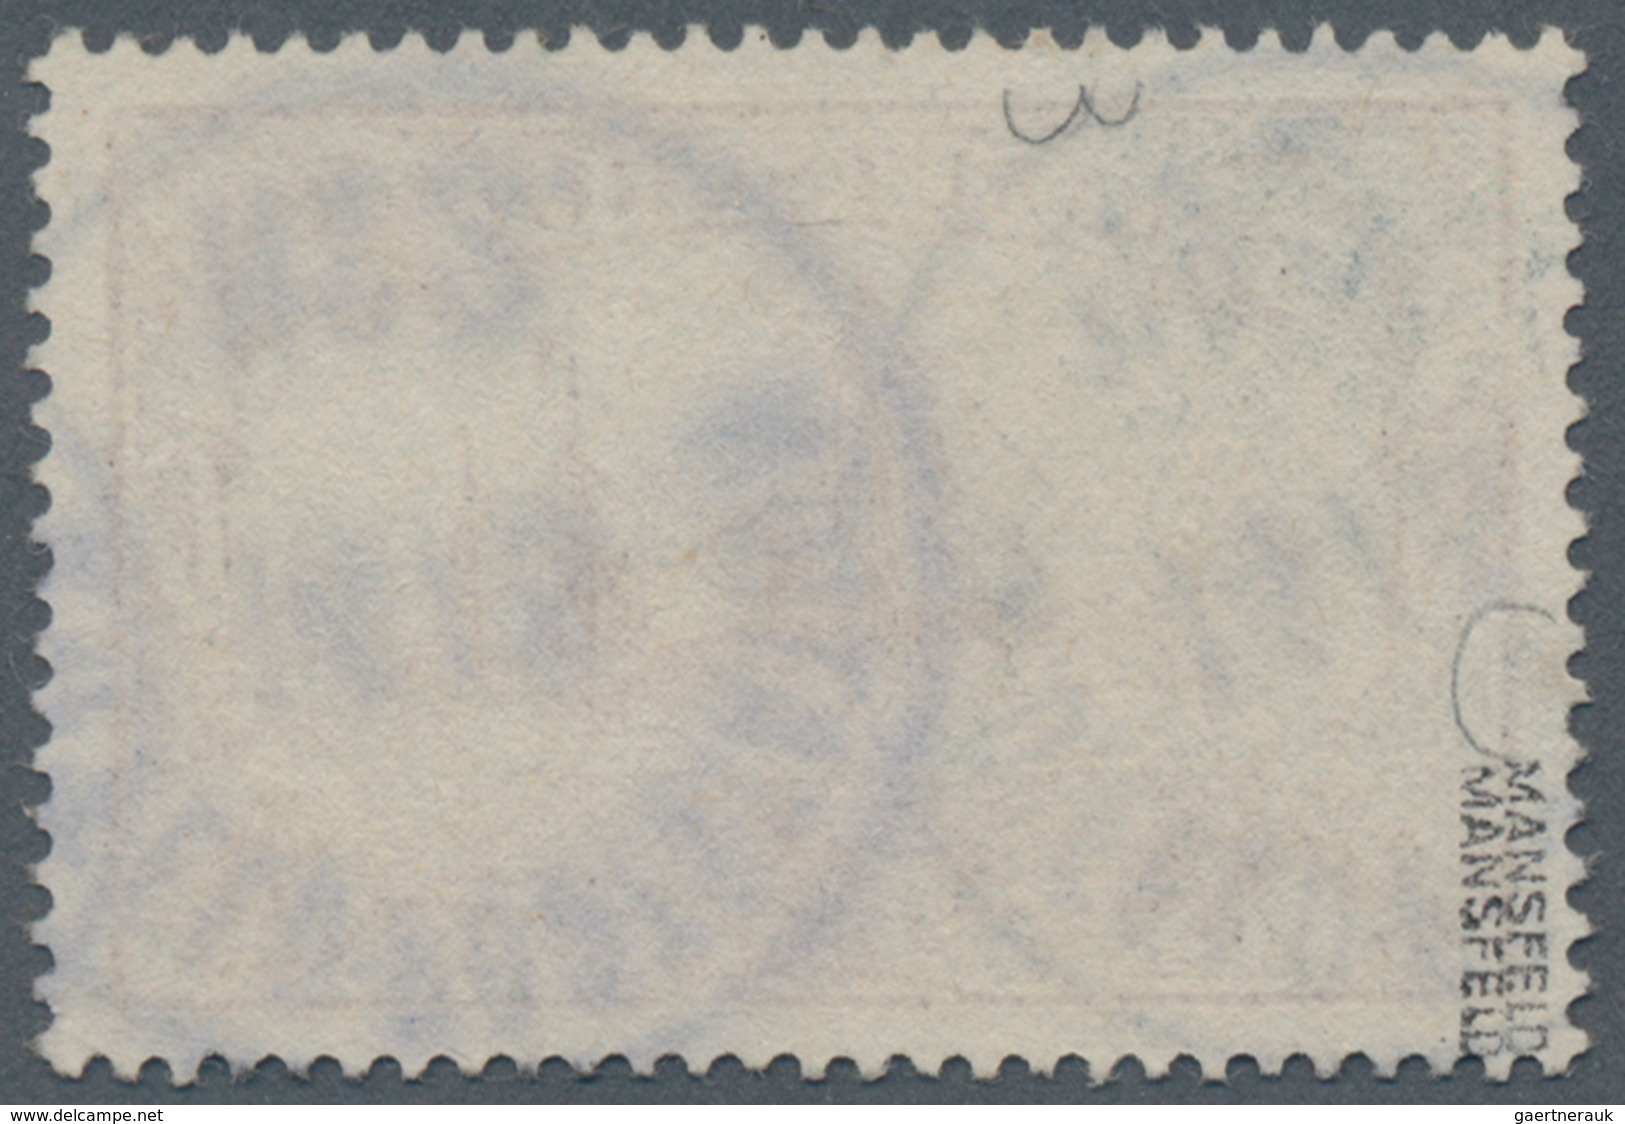 Deutsche Post In China: 1901, Petschili, Kiautschou 3 Mark Schiffszeichnung, Farbfrisch Und In Guter - China (offices)